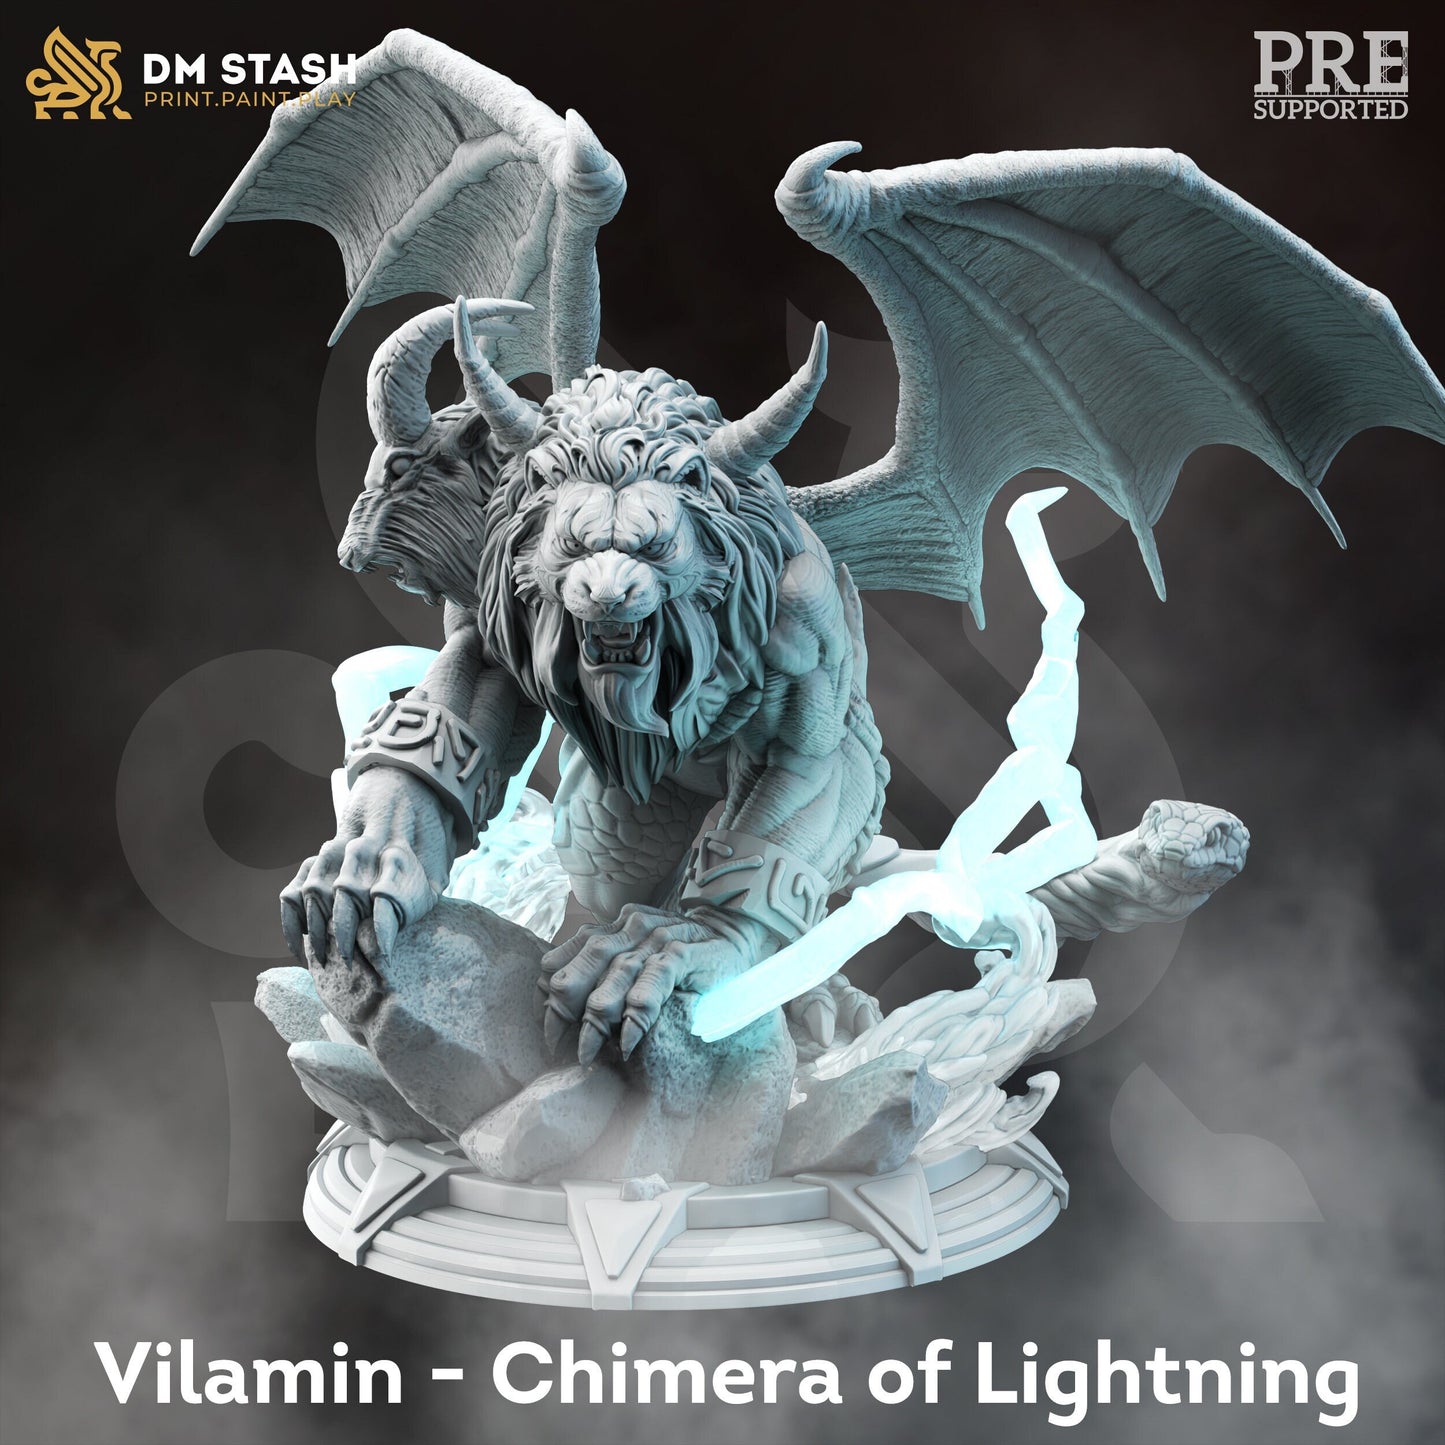 Vilamen - Chimera of Lightning by DM Stash